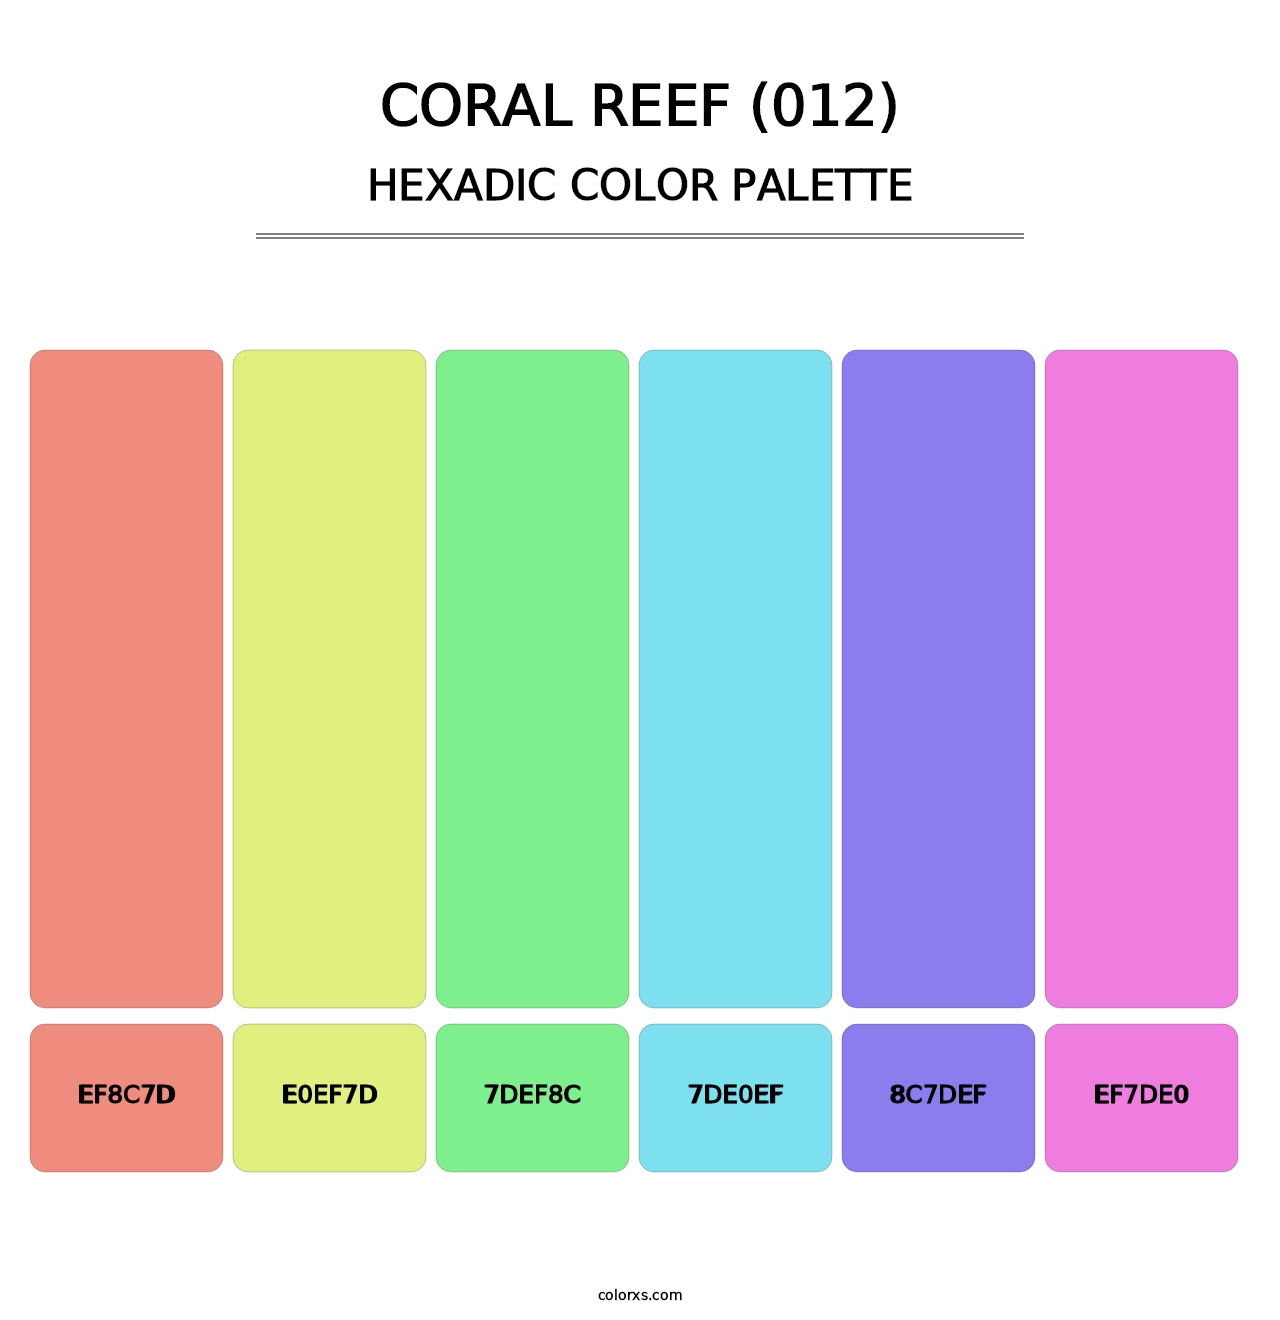 Coral Reef (012) - Hexadic Color Palette